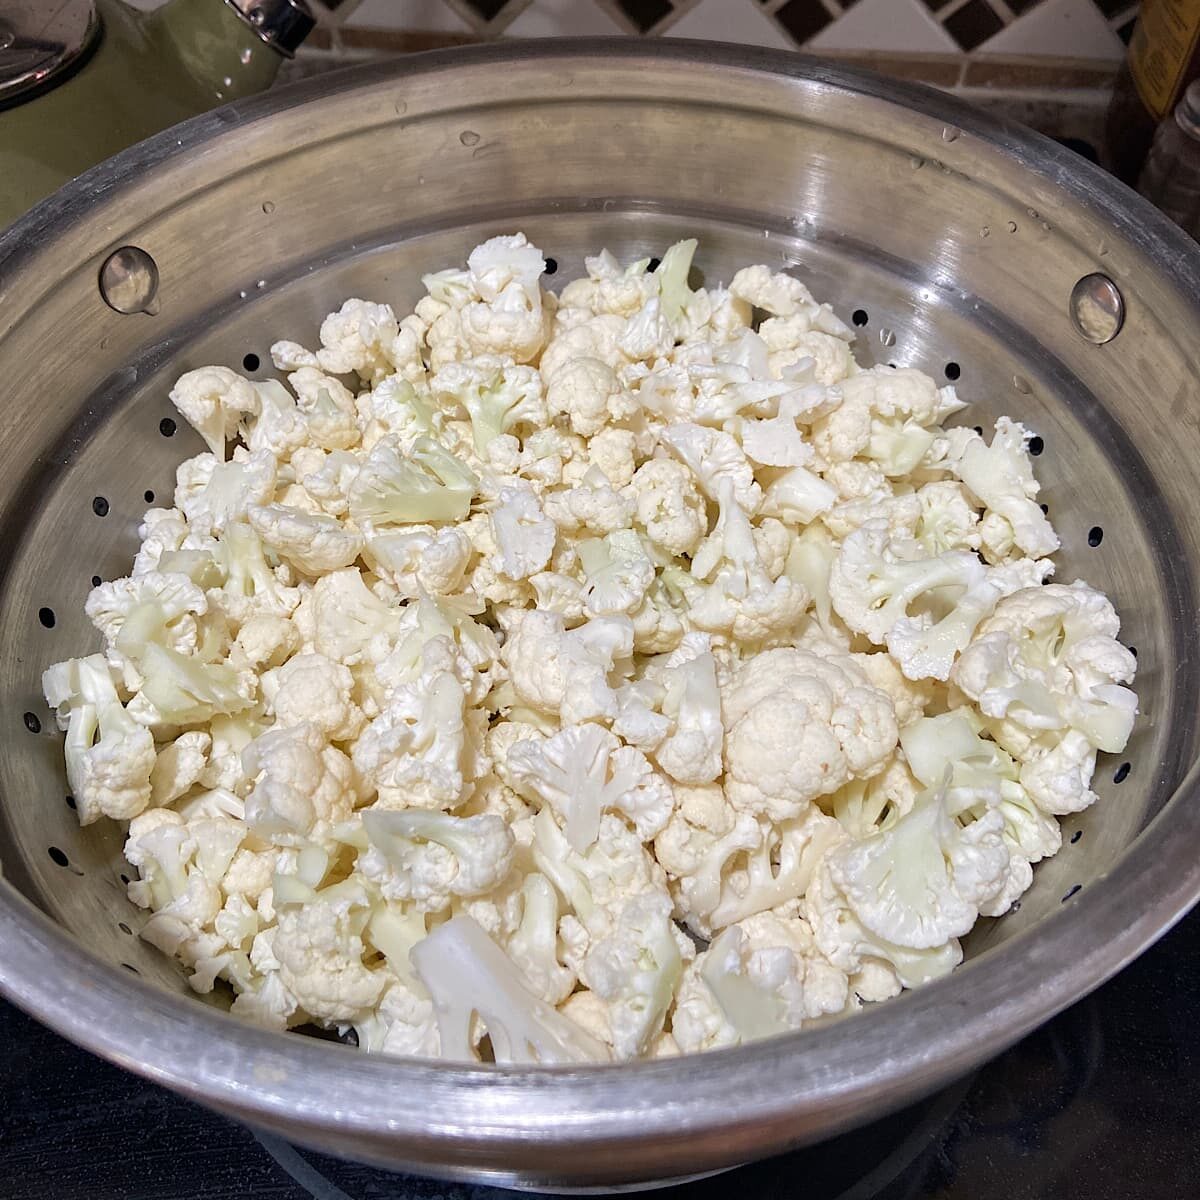 Chopped Cauliflower pieces in steamer basket